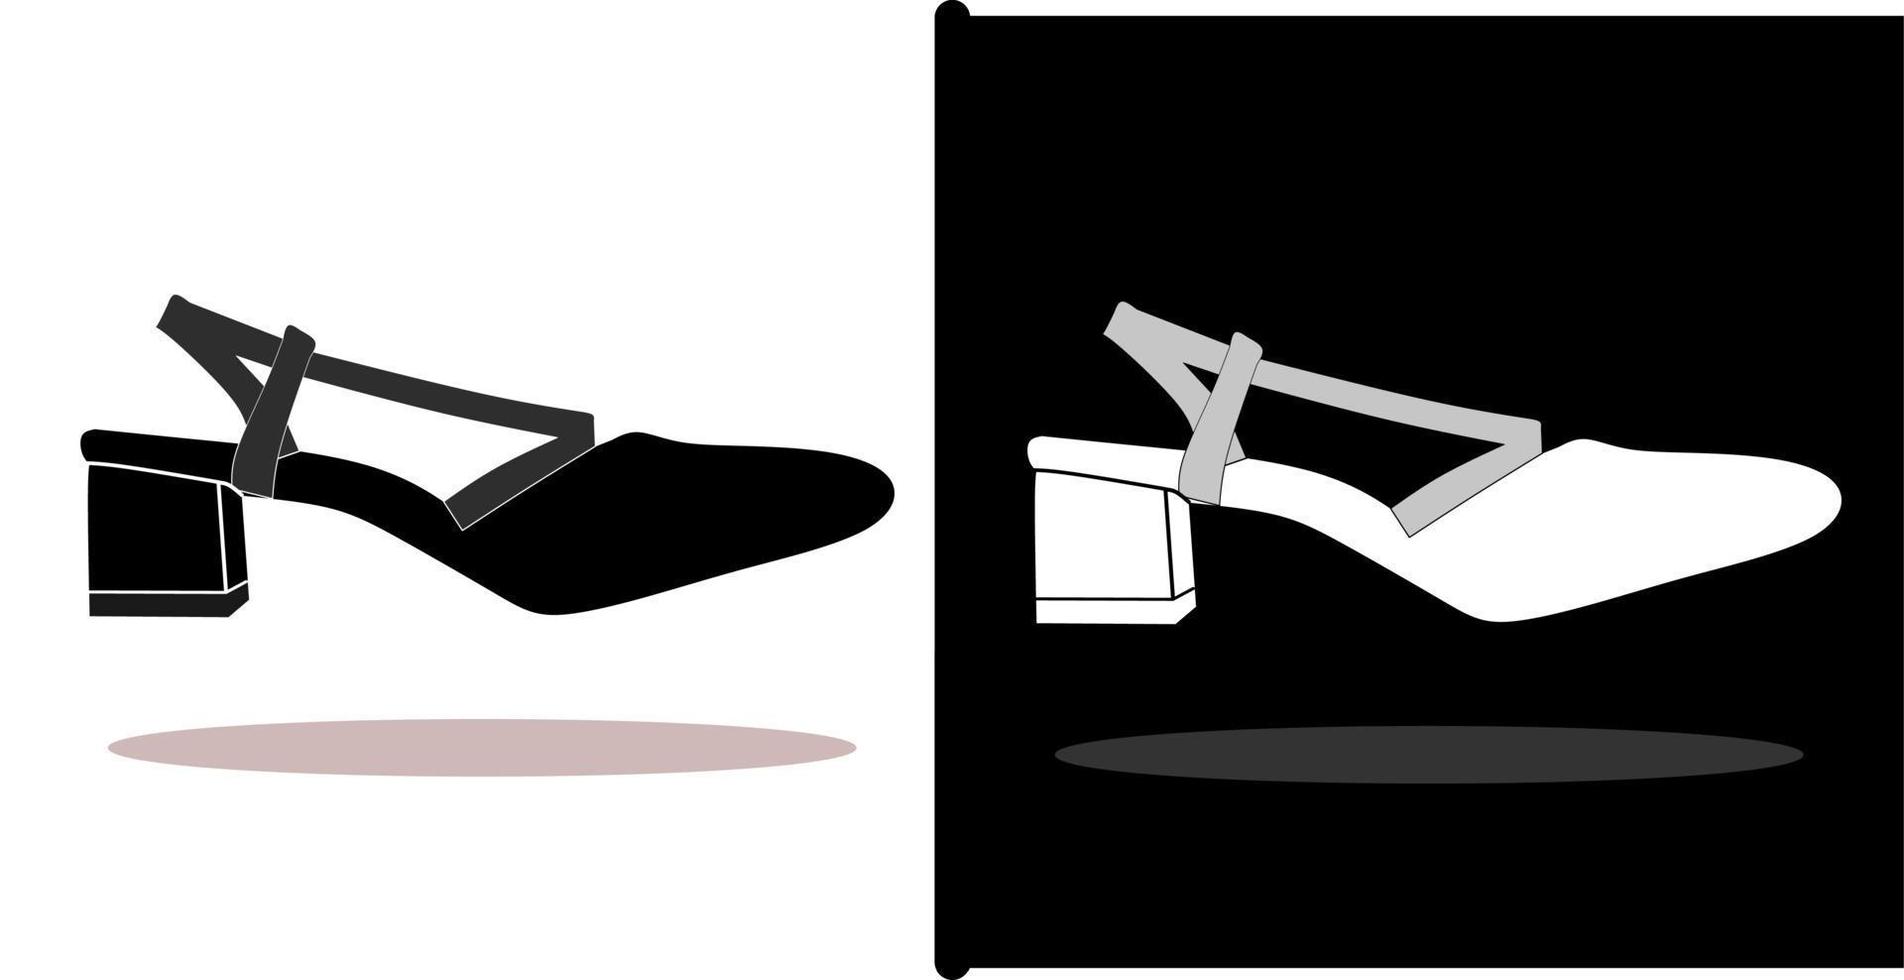 ilustración vectorial de zapatos, aislada en un diseño de fondo blanco y negro vector